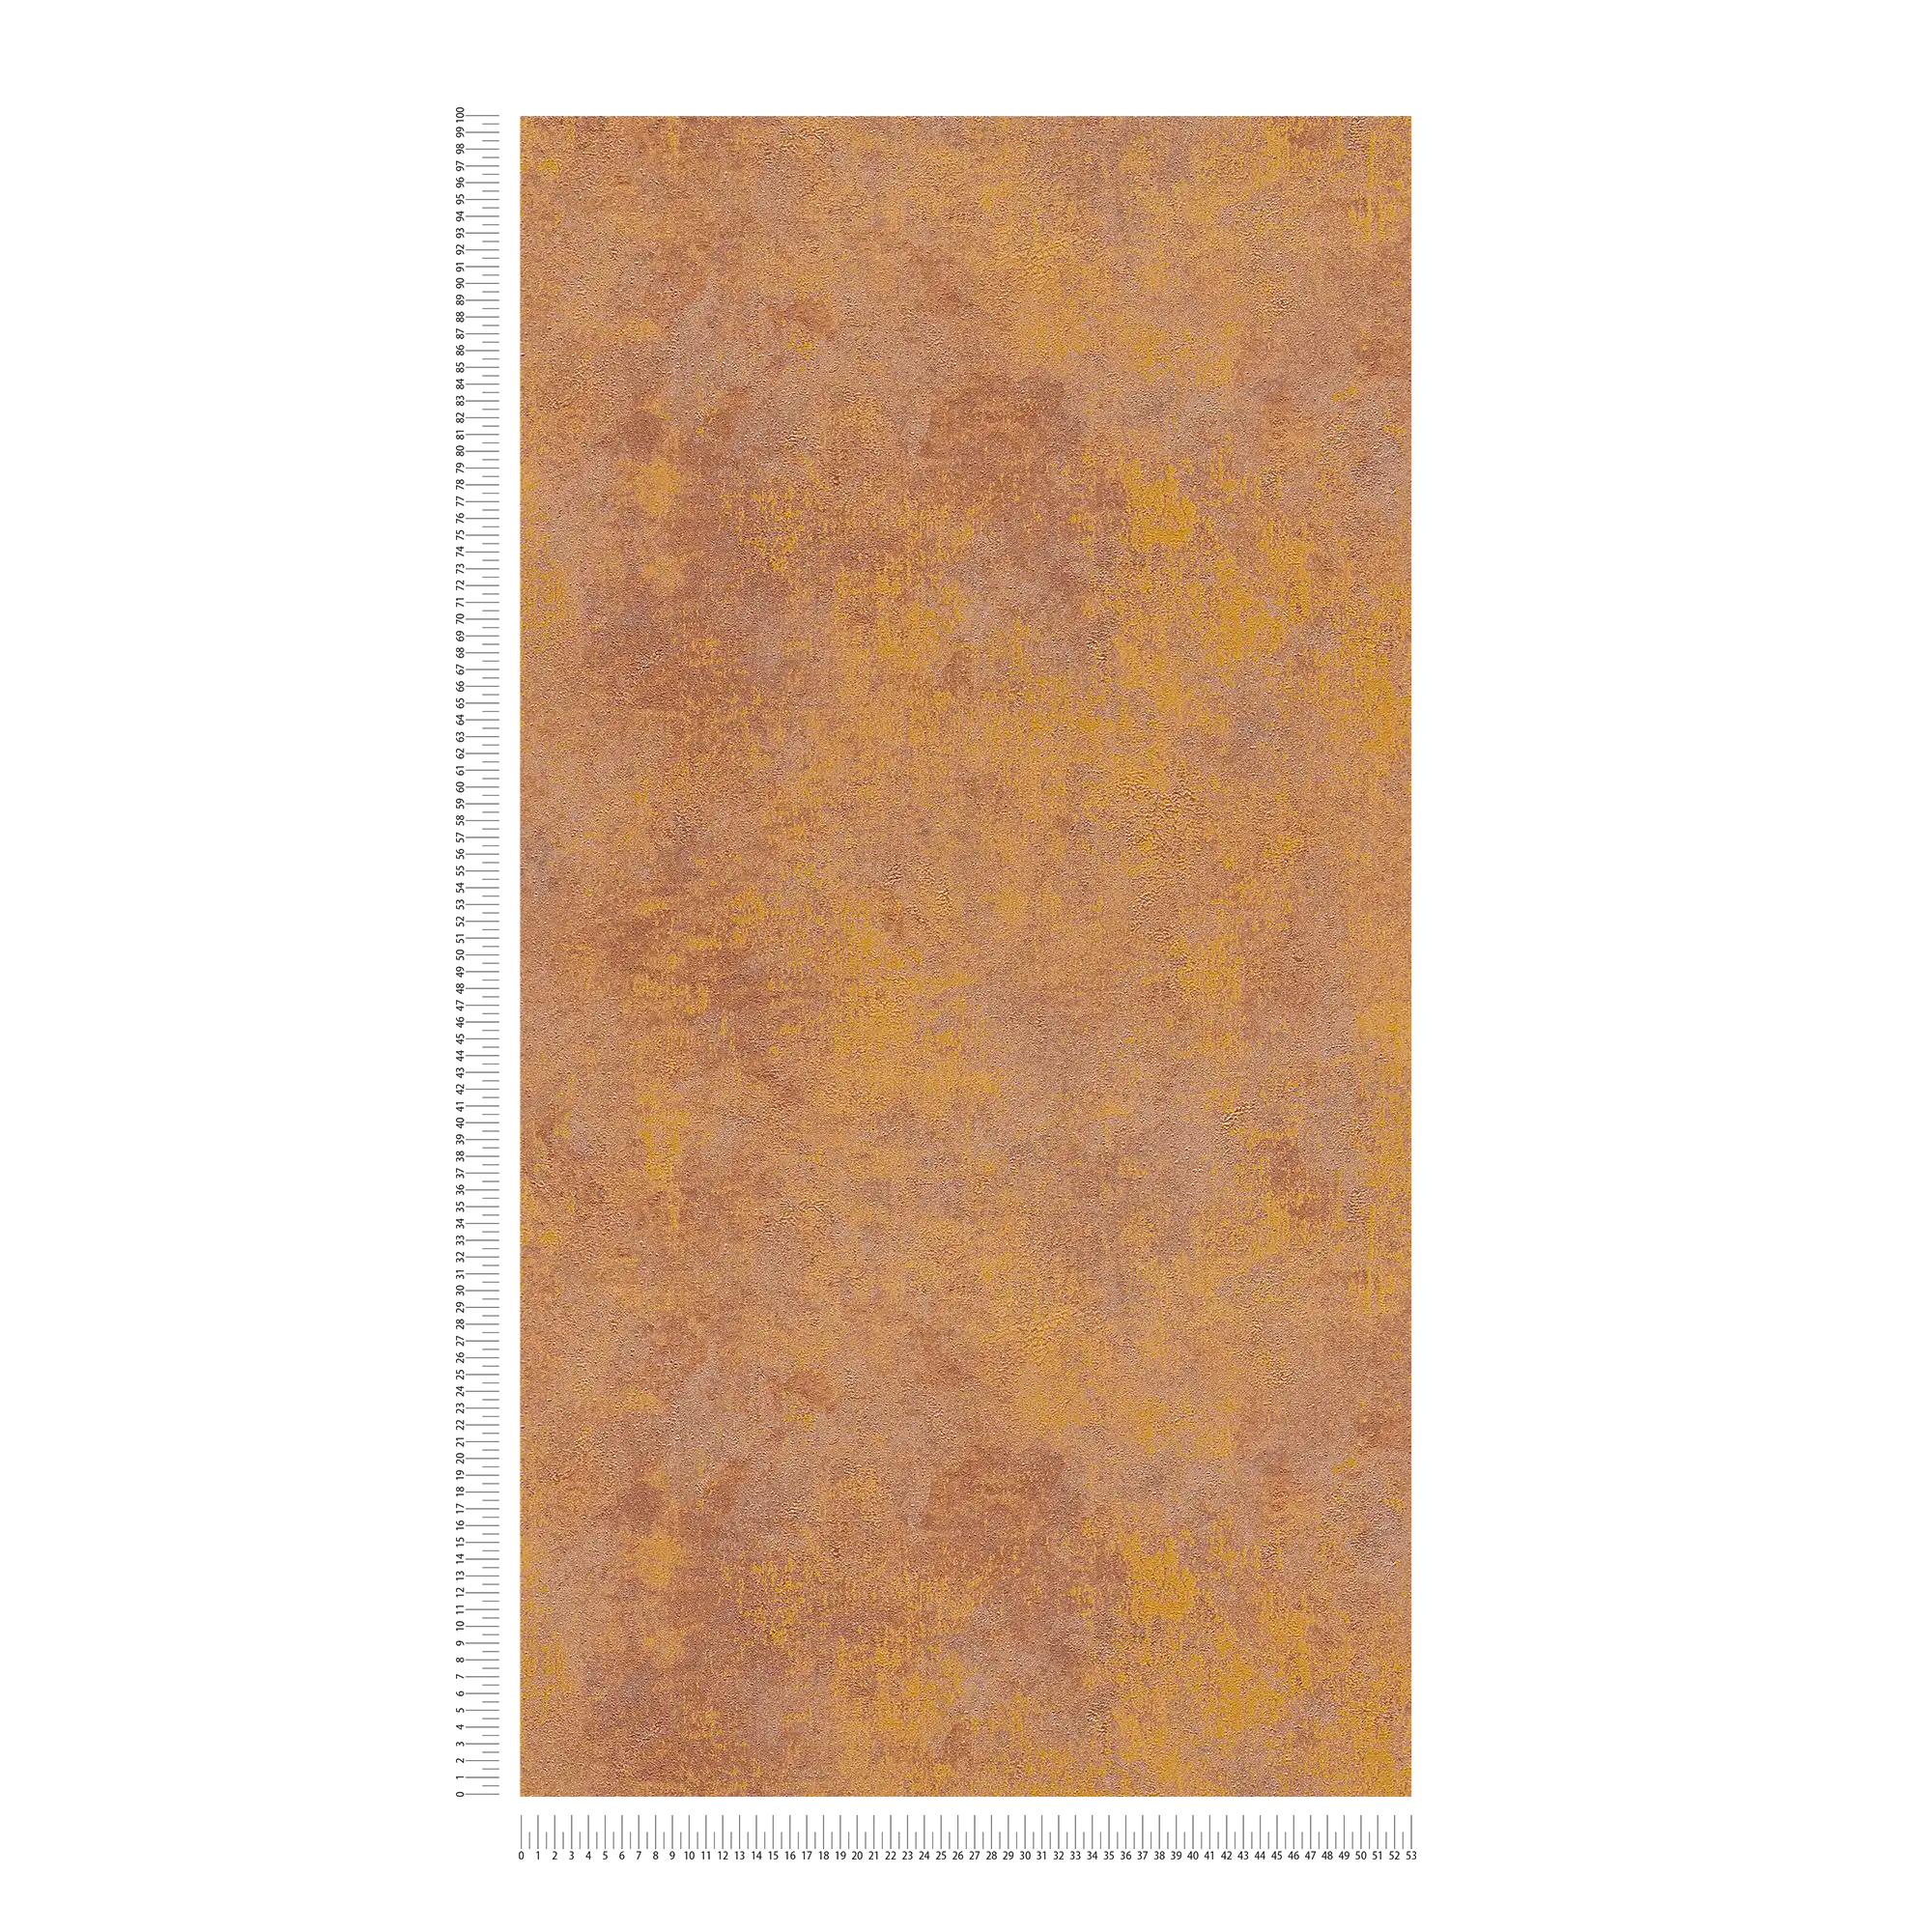             Papier peint intissé aspect rouille avec effet brillant - orange, cuivre, marron
        